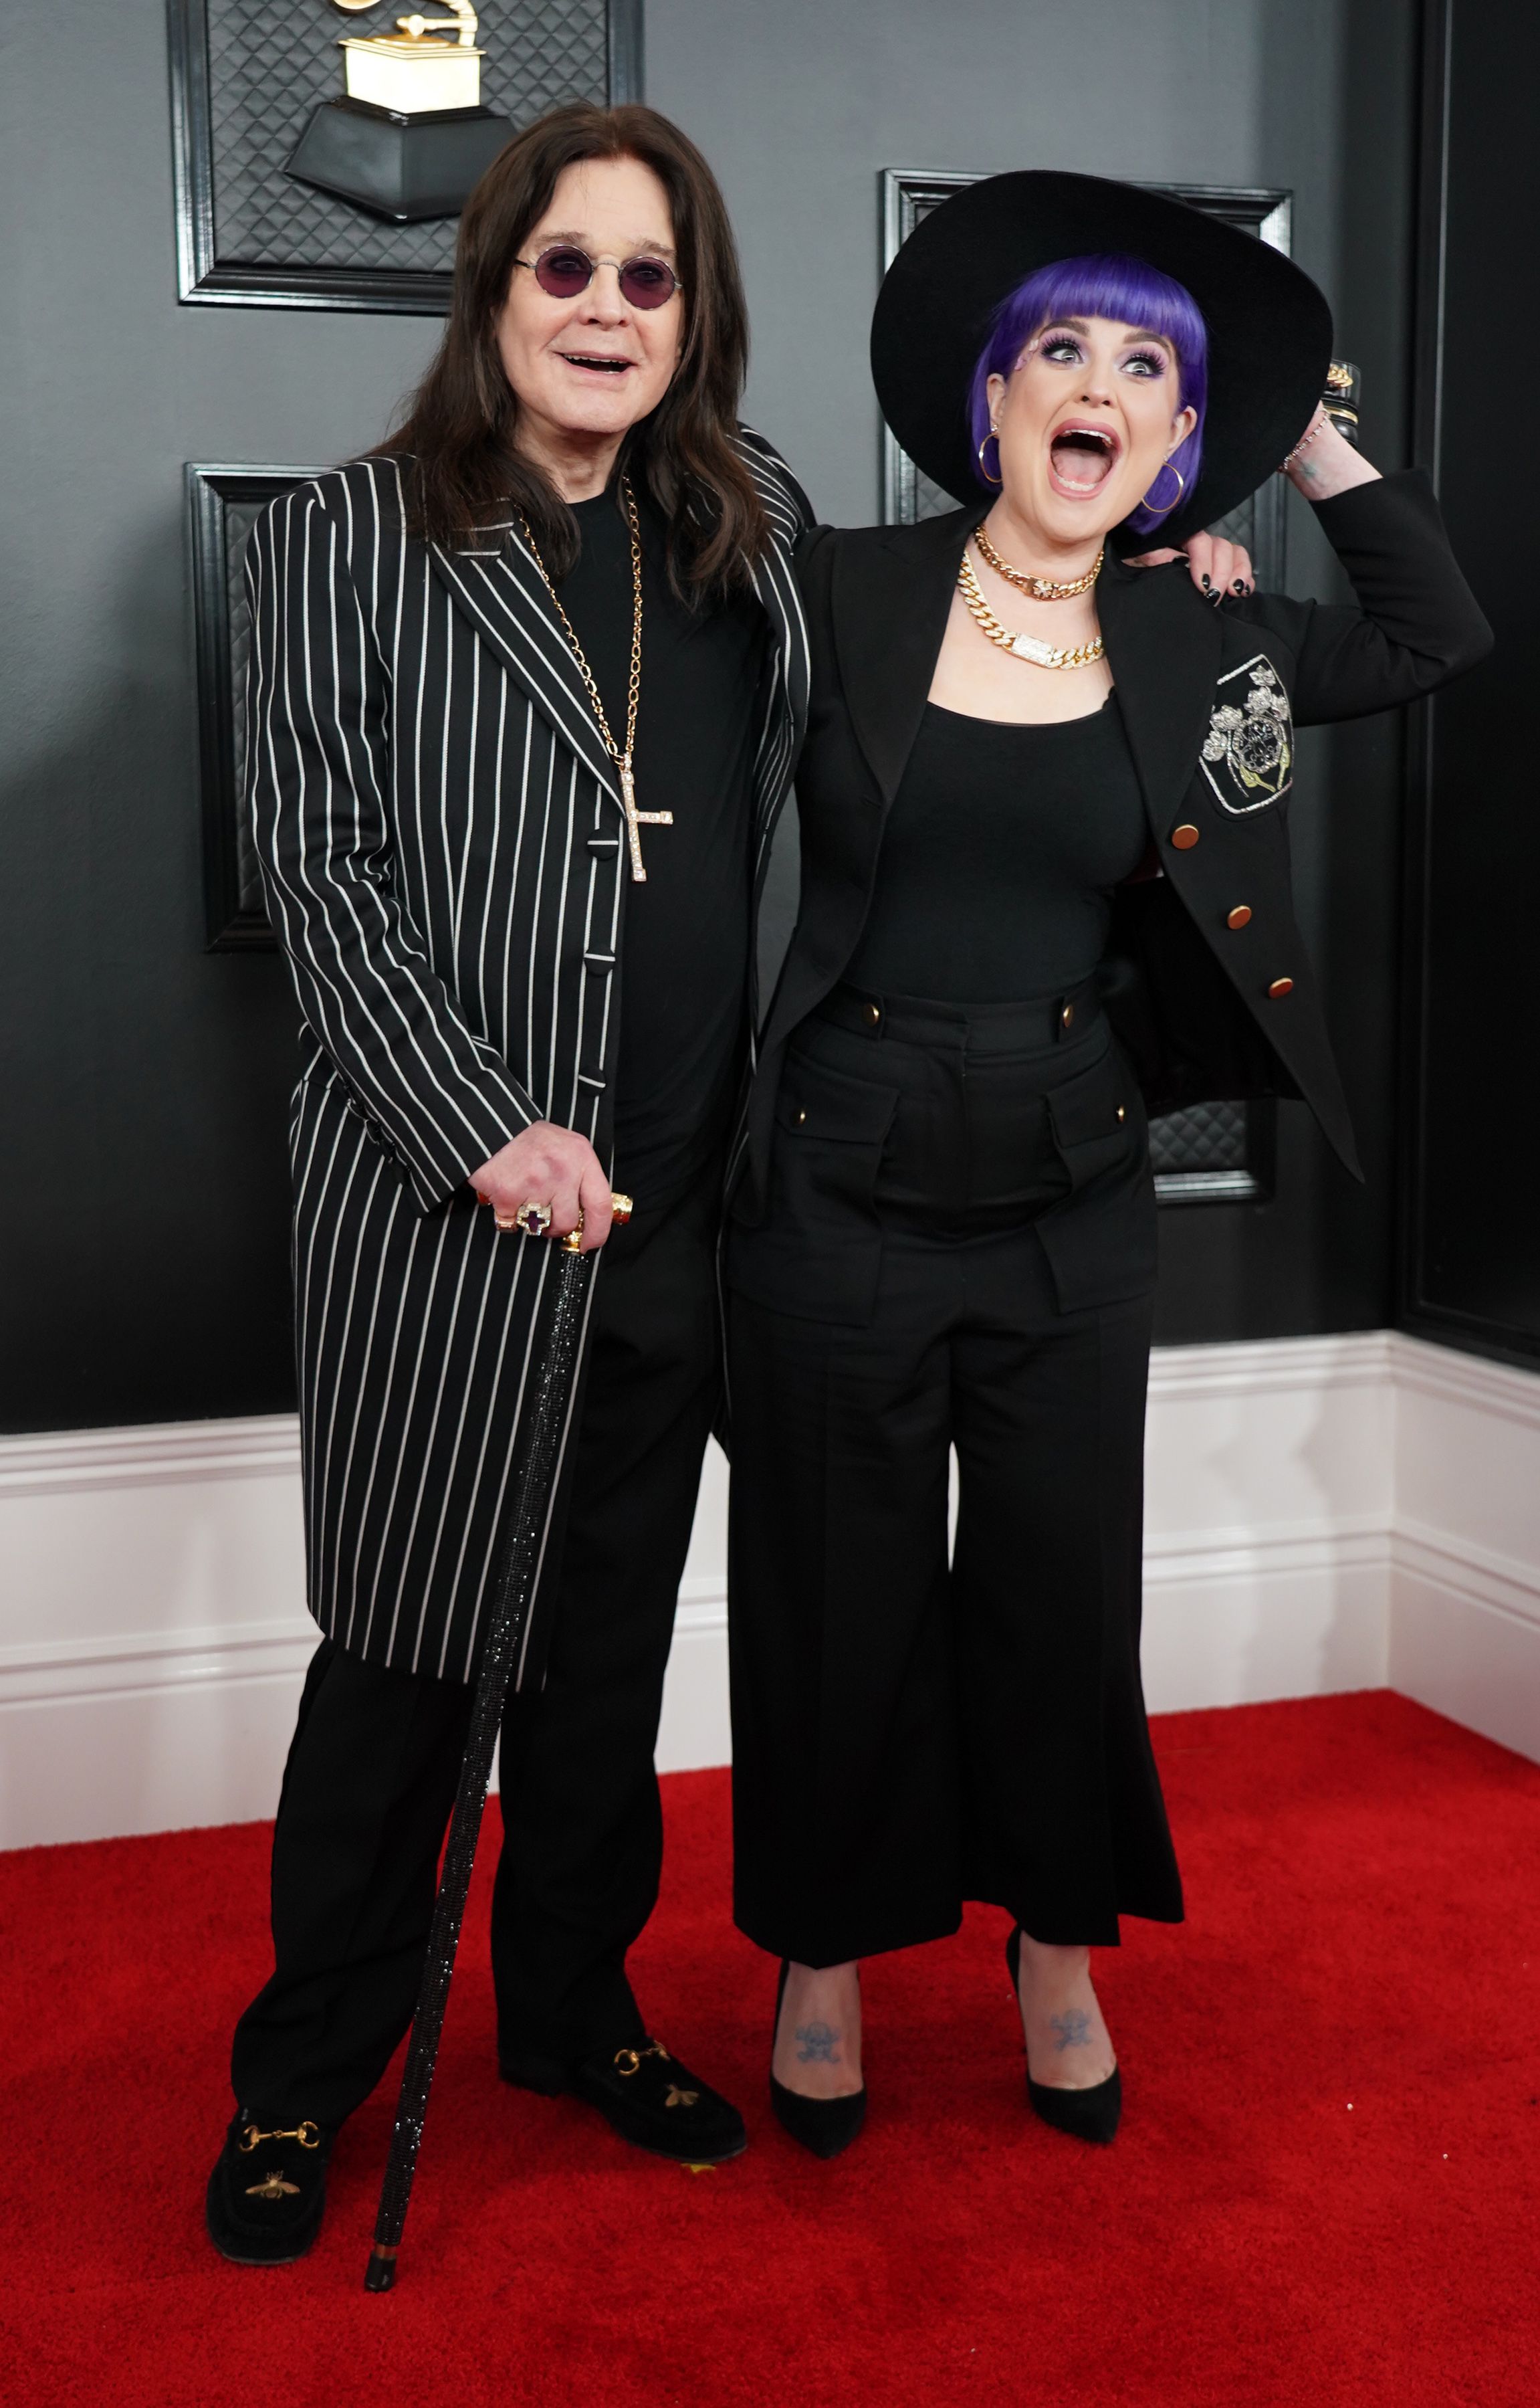 Ozzy Osbourne and Kelly Osbourne